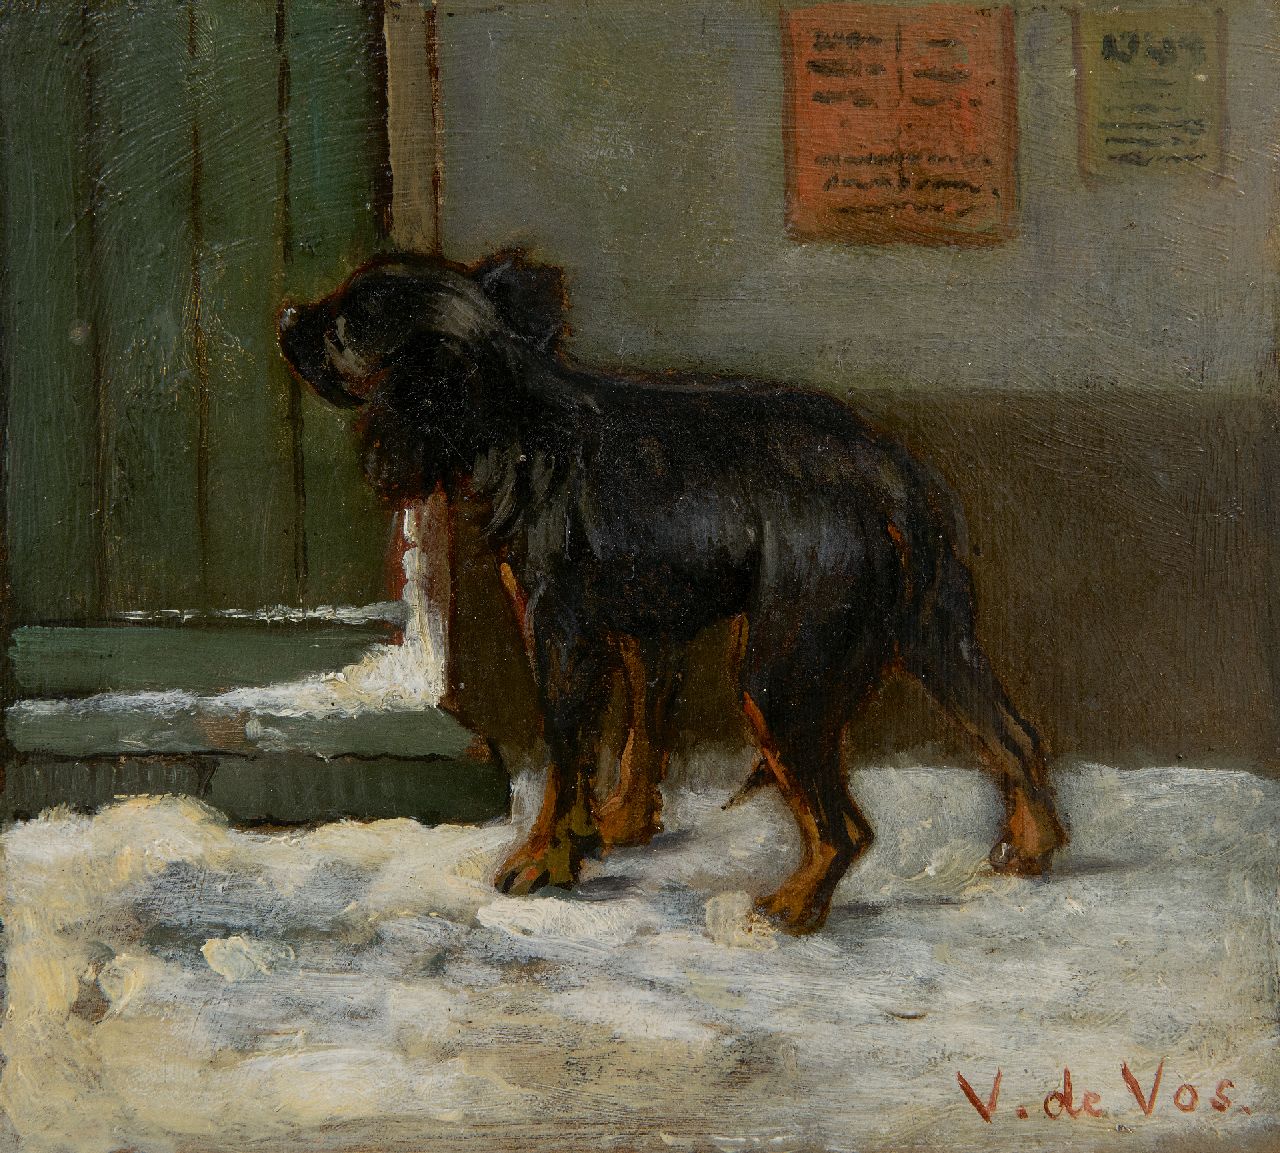 Vos V. de | Vincent de Vos | Paintings offered for sale | Arrived at the destination, oil on canvas 15.6 x 17.1 cm, signed l.r.